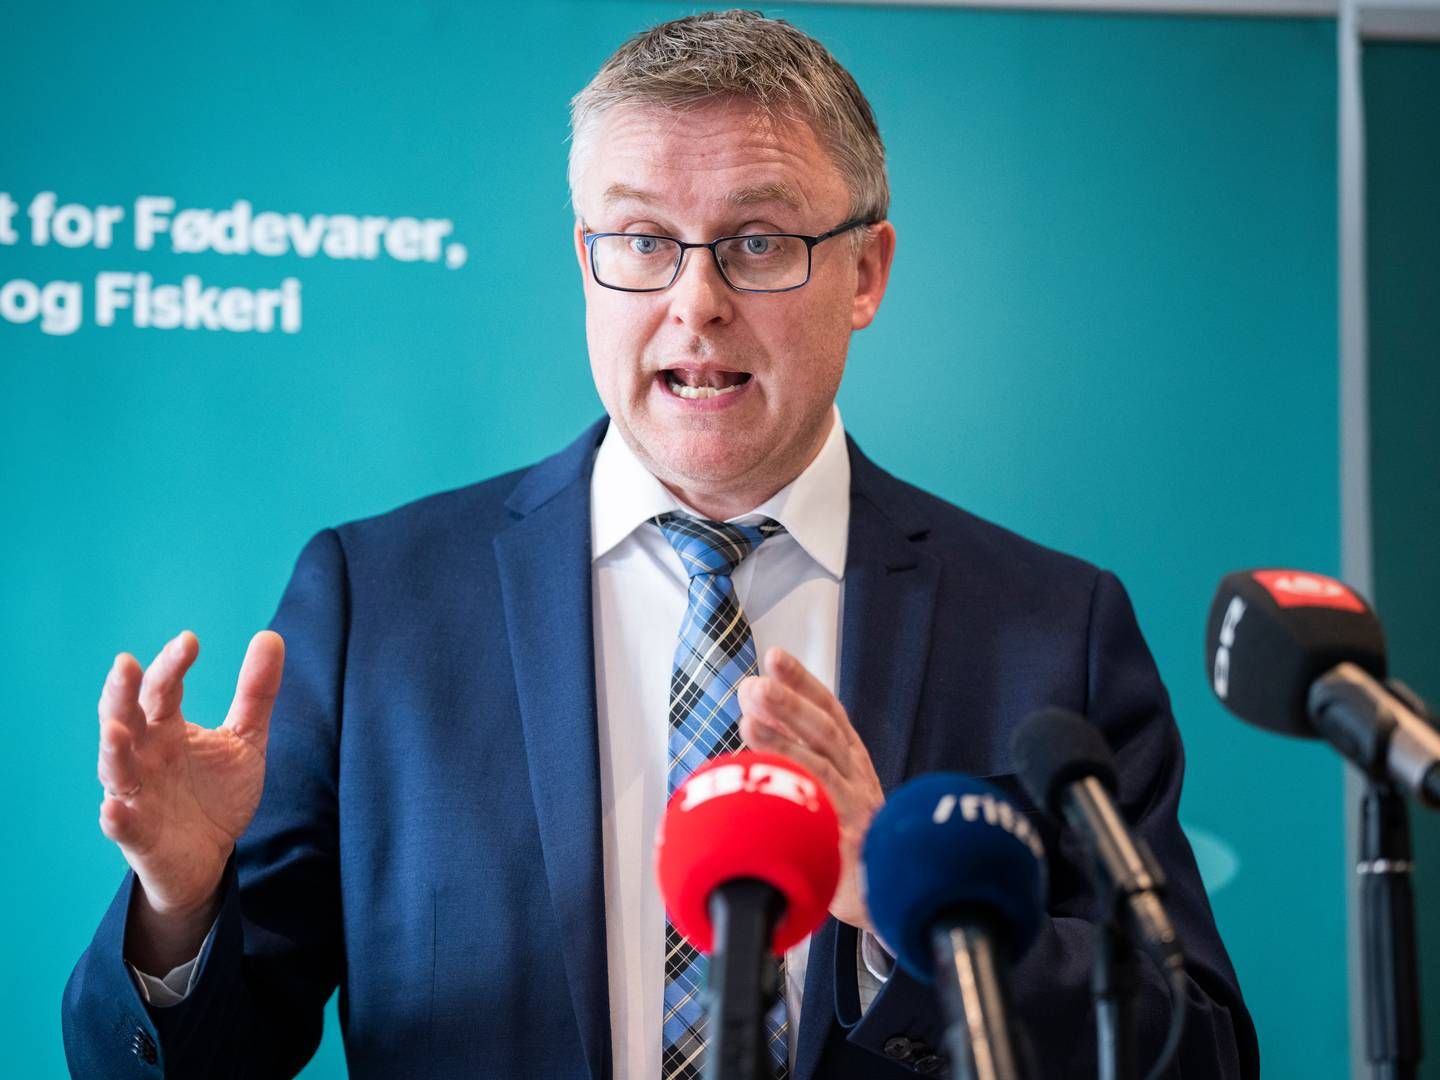 Fødevareminister Jacob Jensen (V) får Jakob Kronborg som permanent presse- og kommunikationschef. | Foto: Martin Sylvest/Ritzau Scanpix